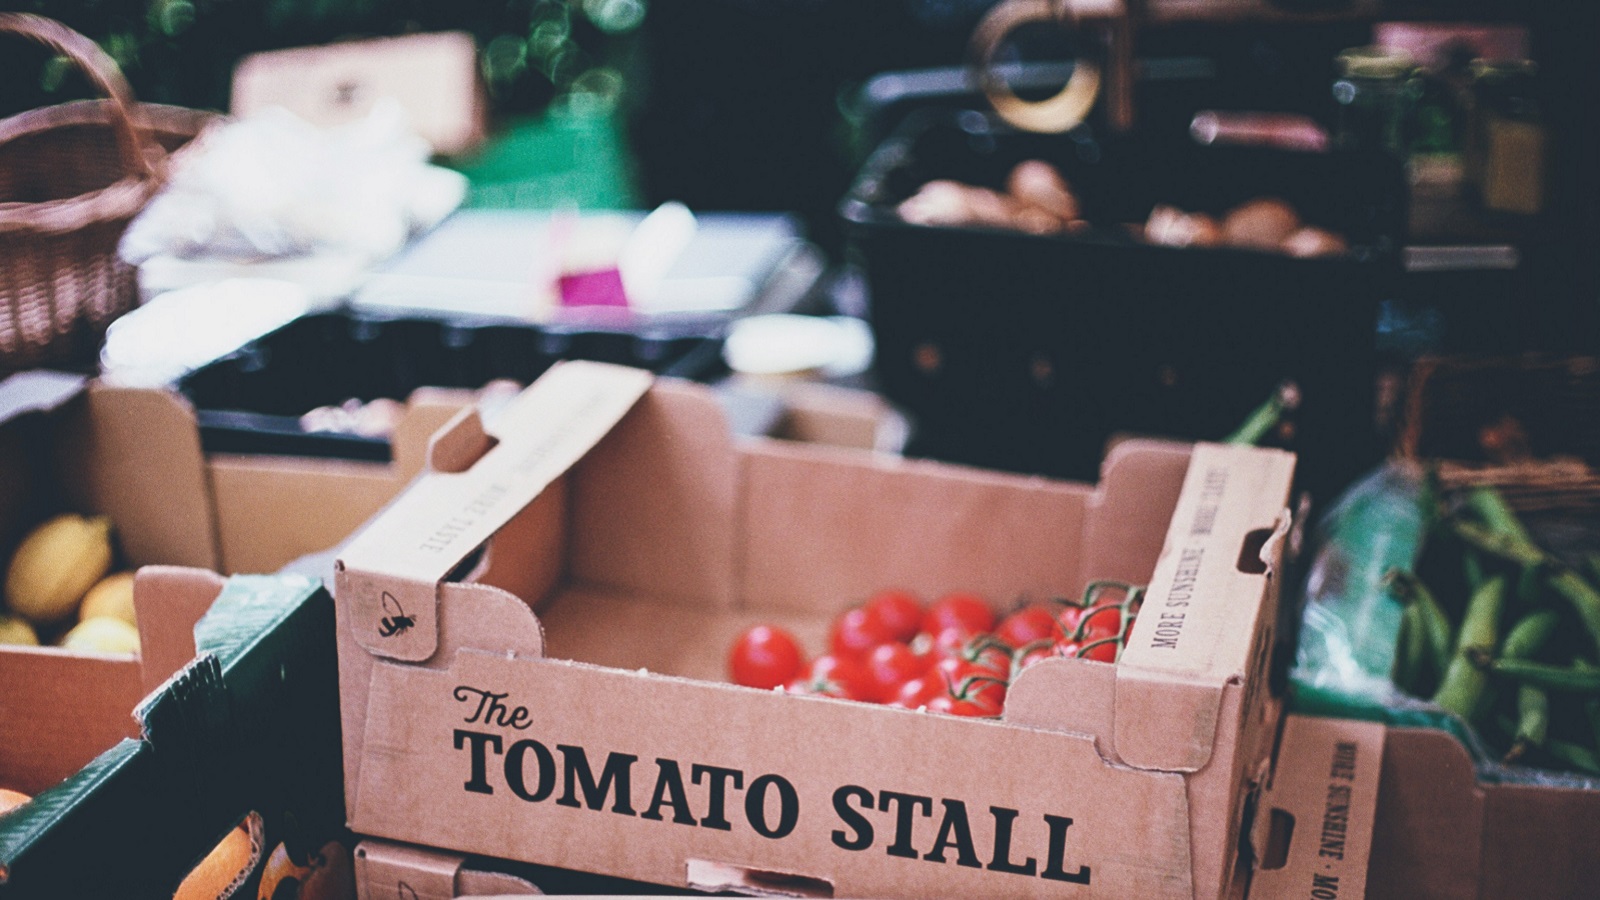 Tomato stall